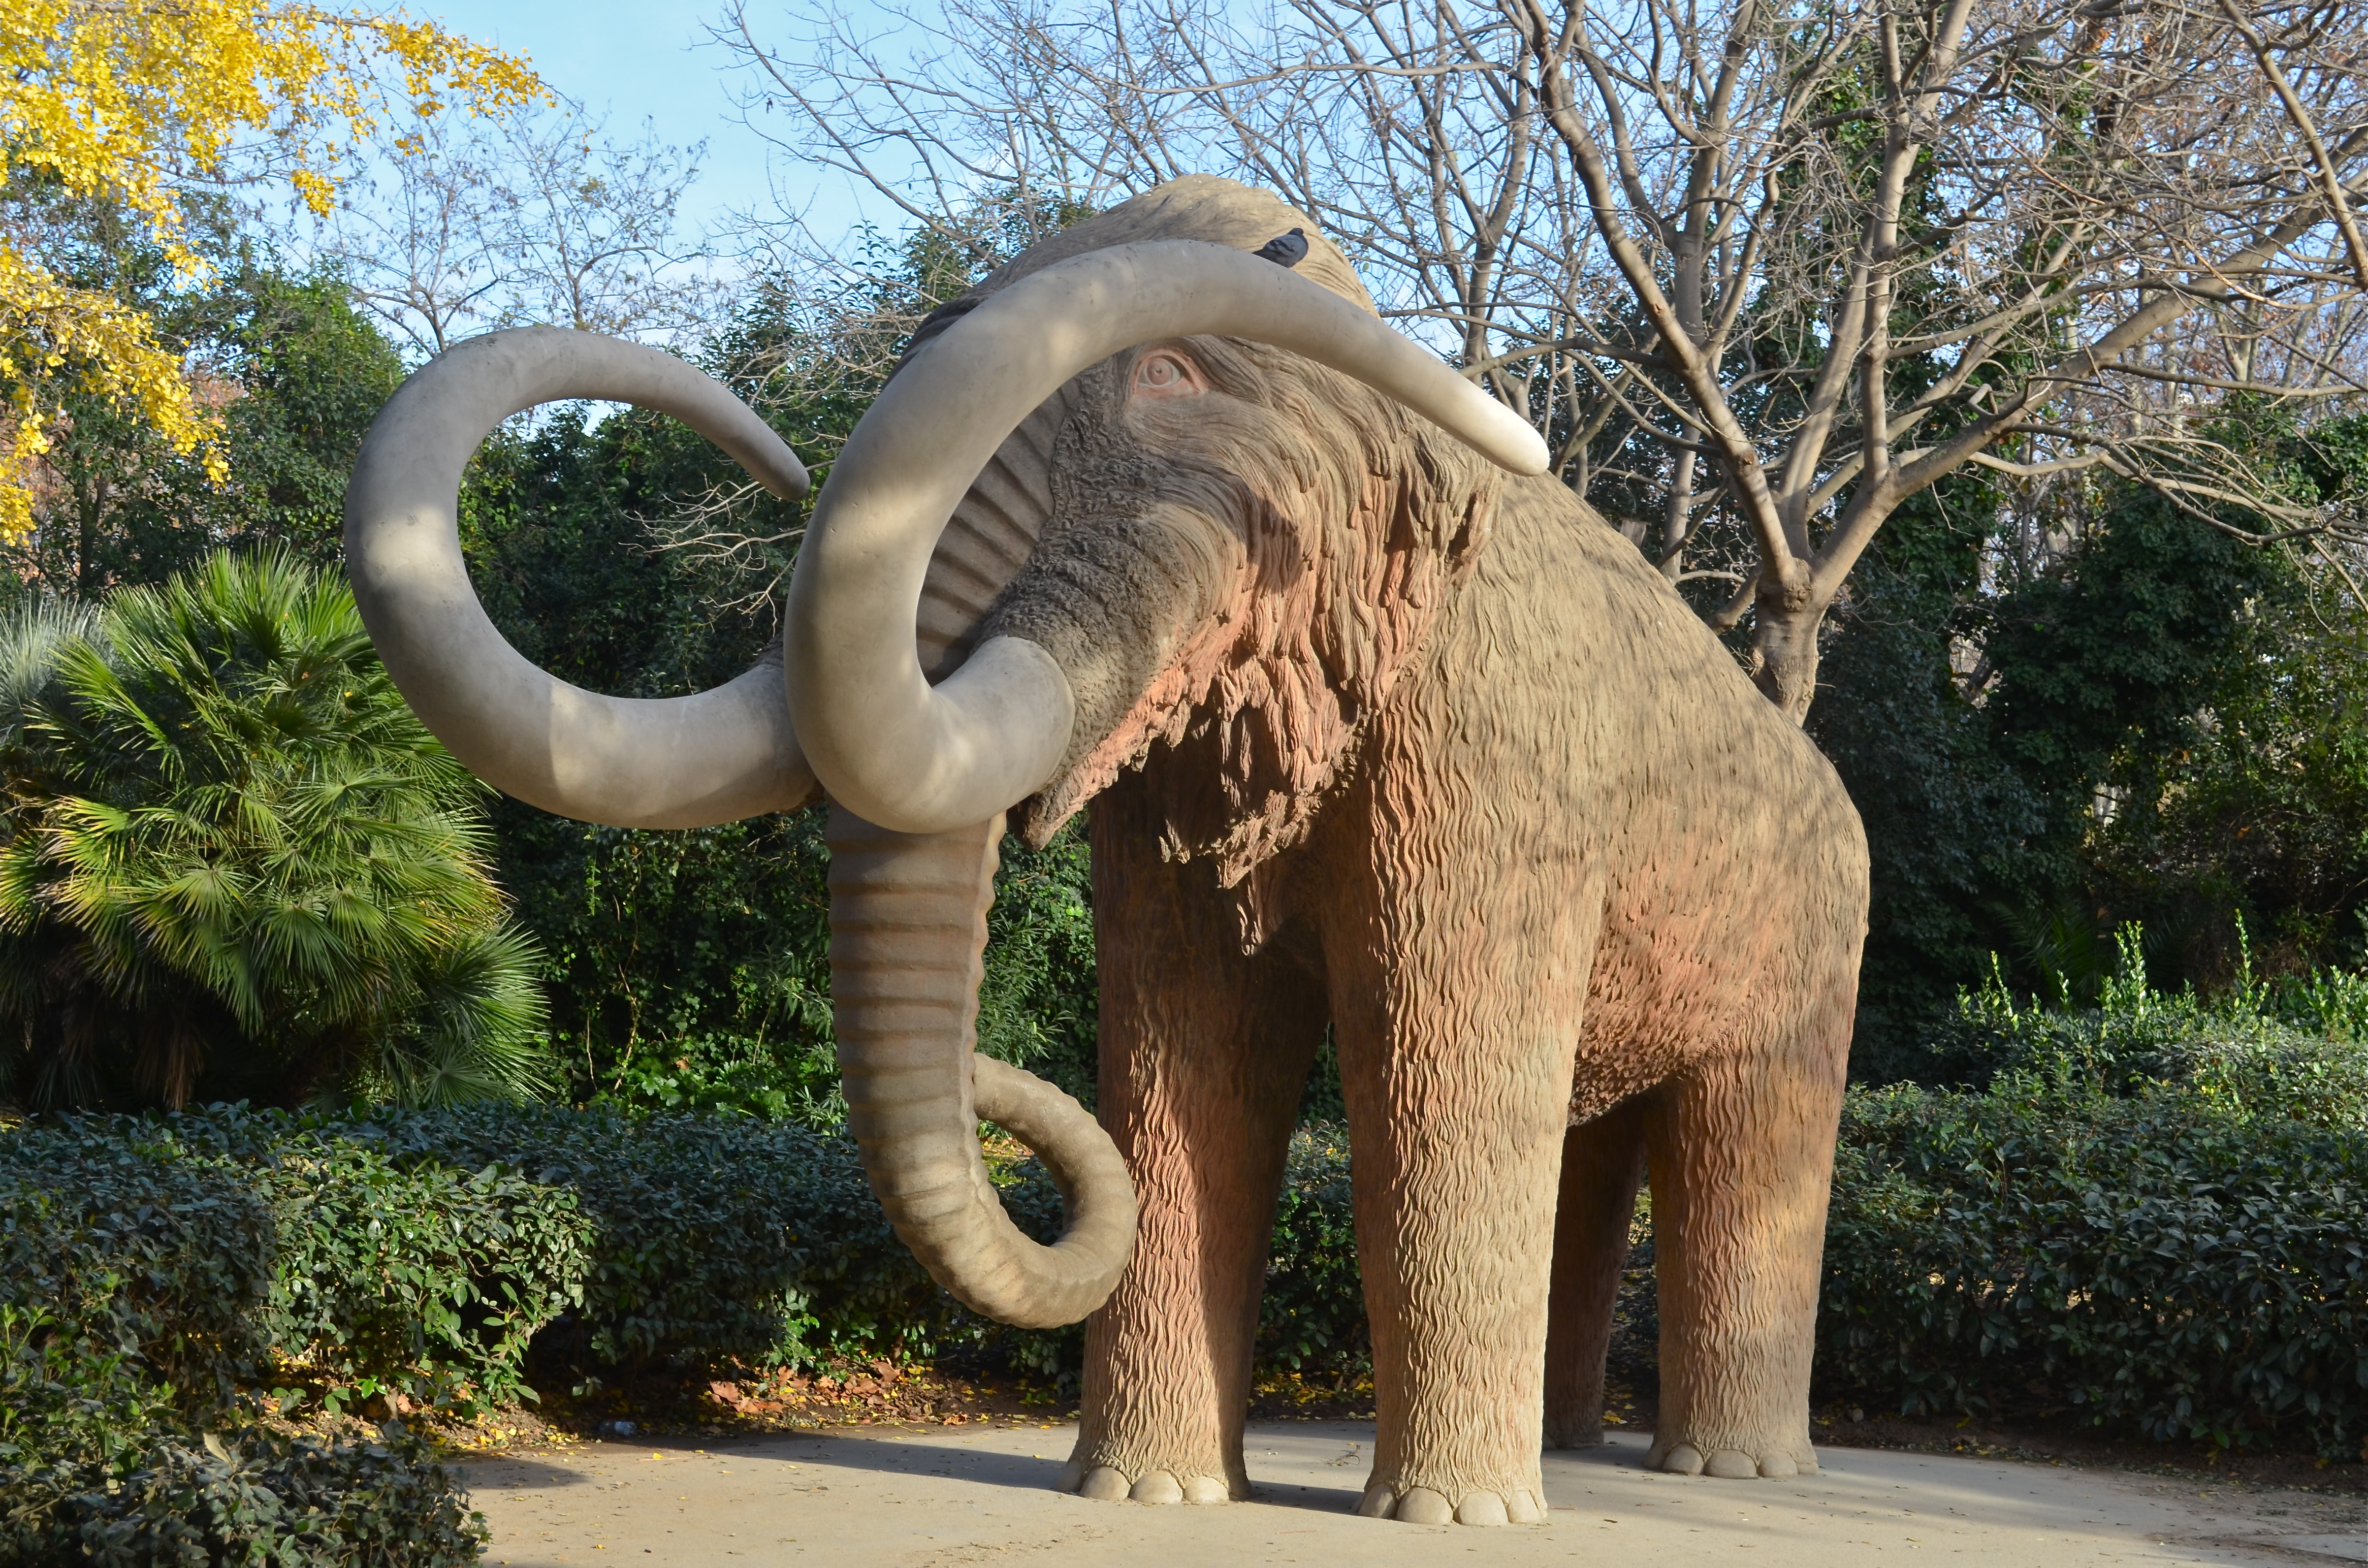 Barcelona - Mammoth sculpture